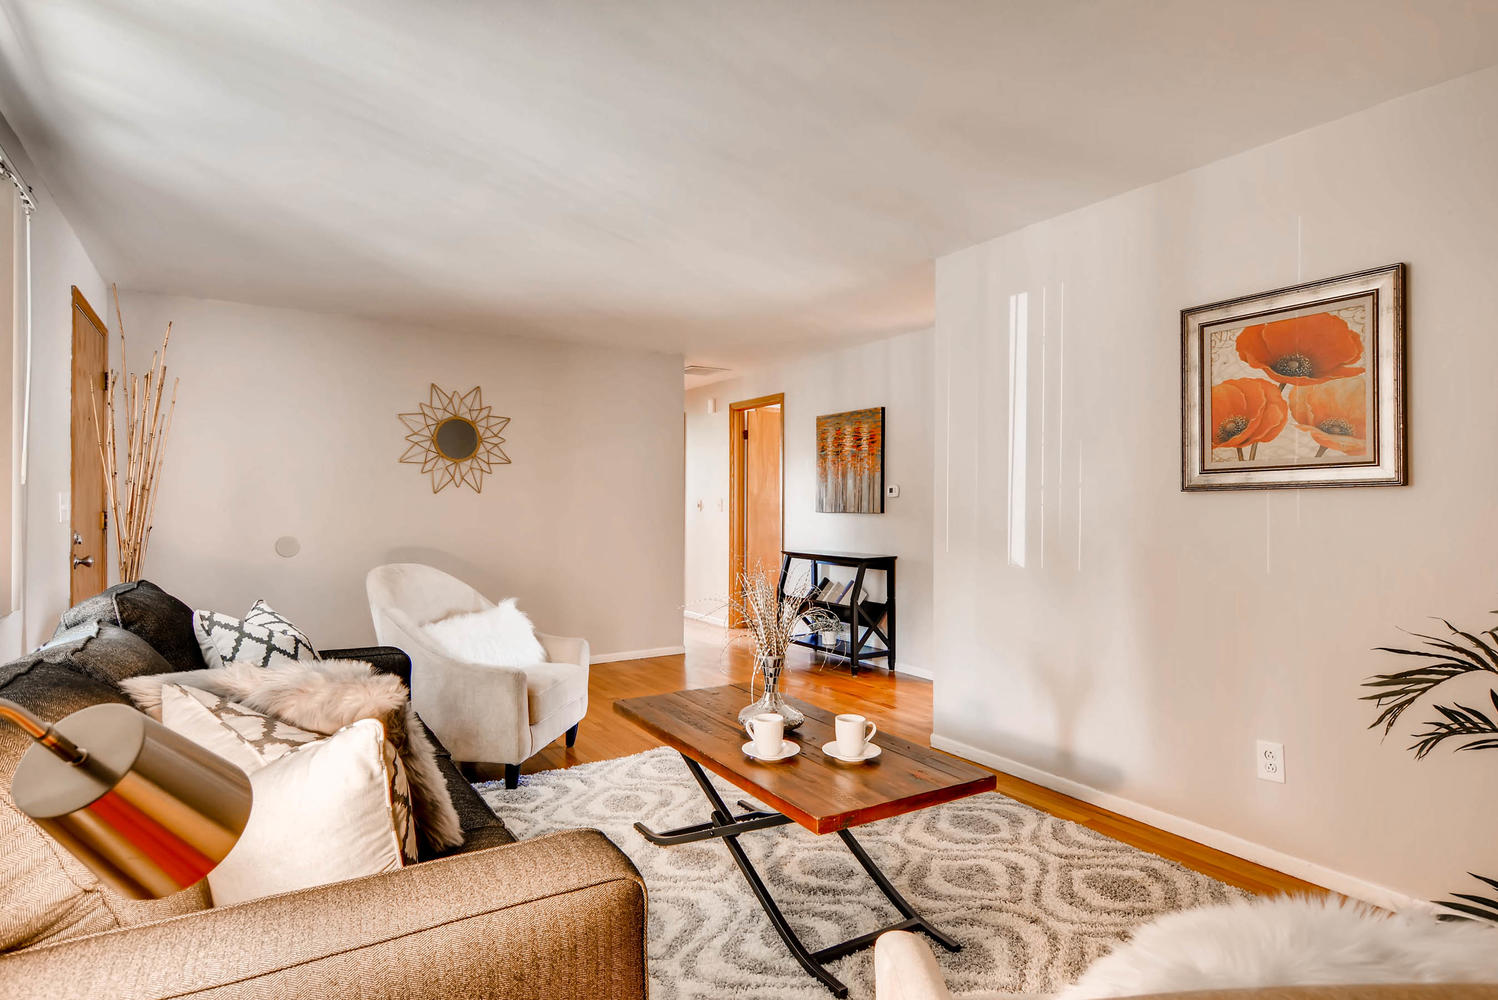 Real Estate Listing: 8305 Mitze Way Denver Living Room